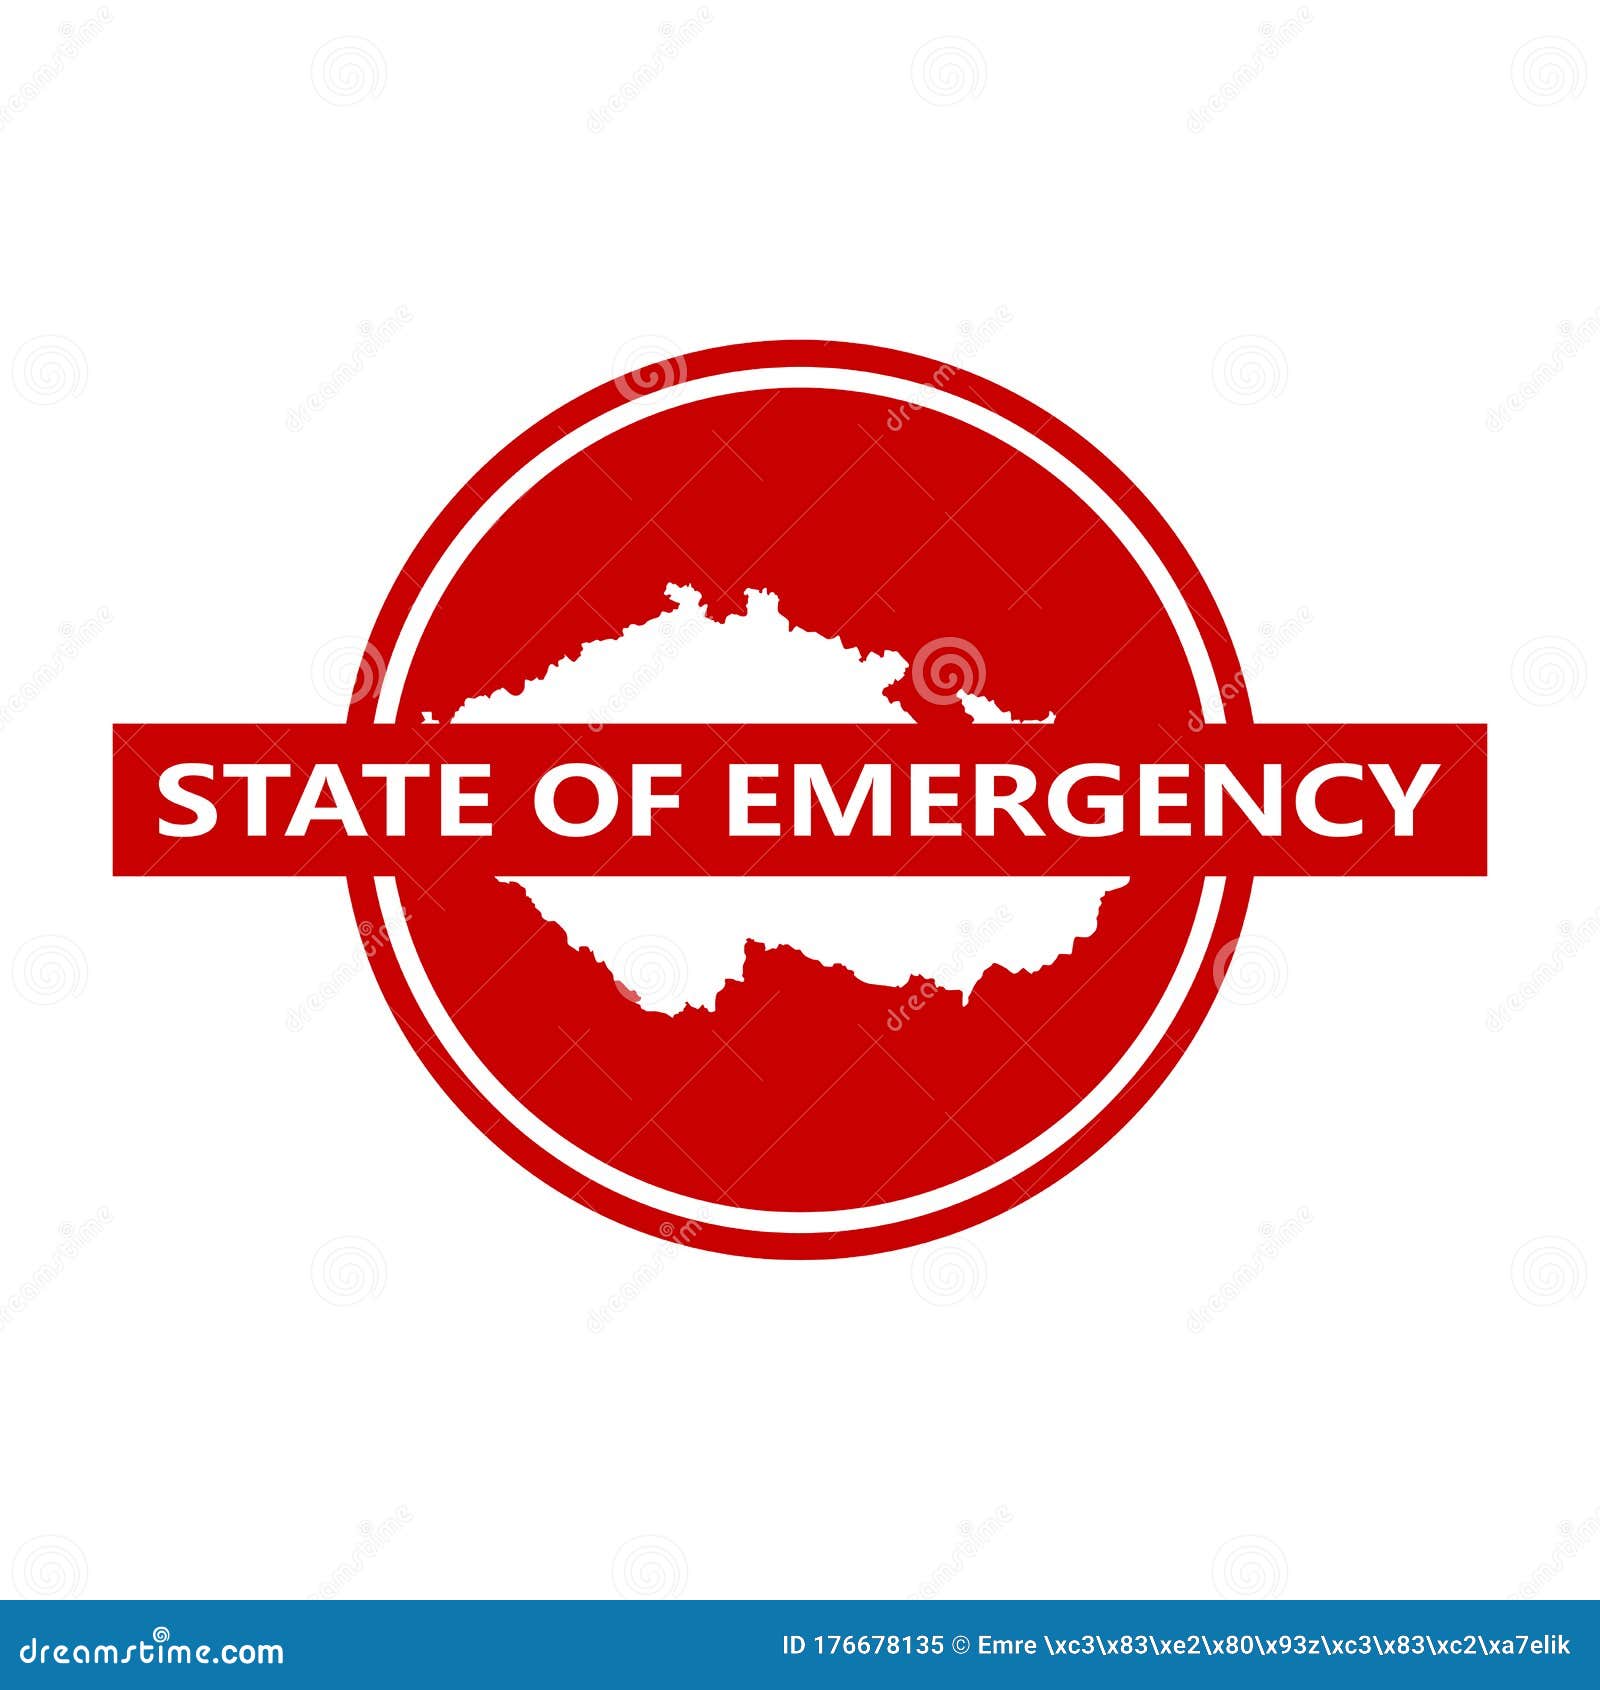 state of emergency, corona virus